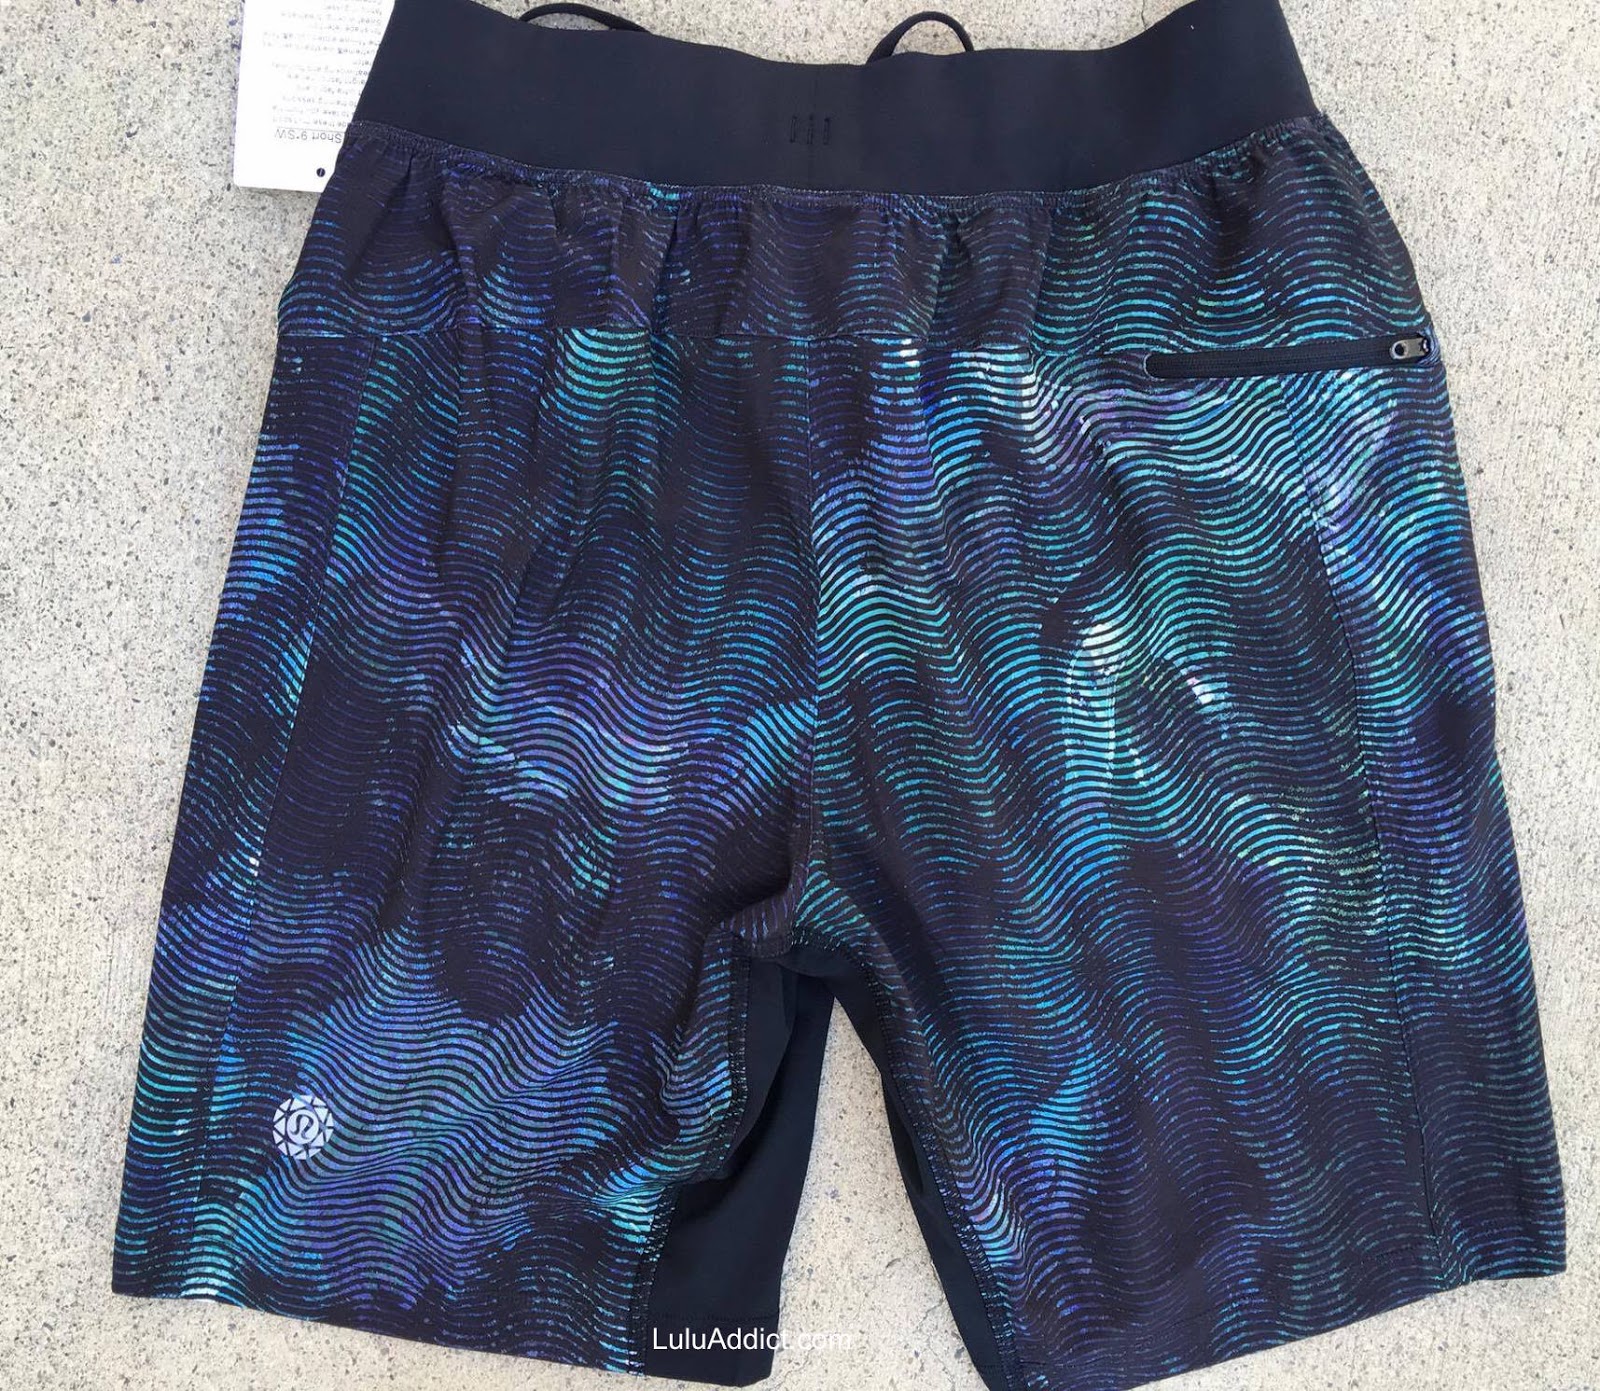 lululemon seawheeze shorts